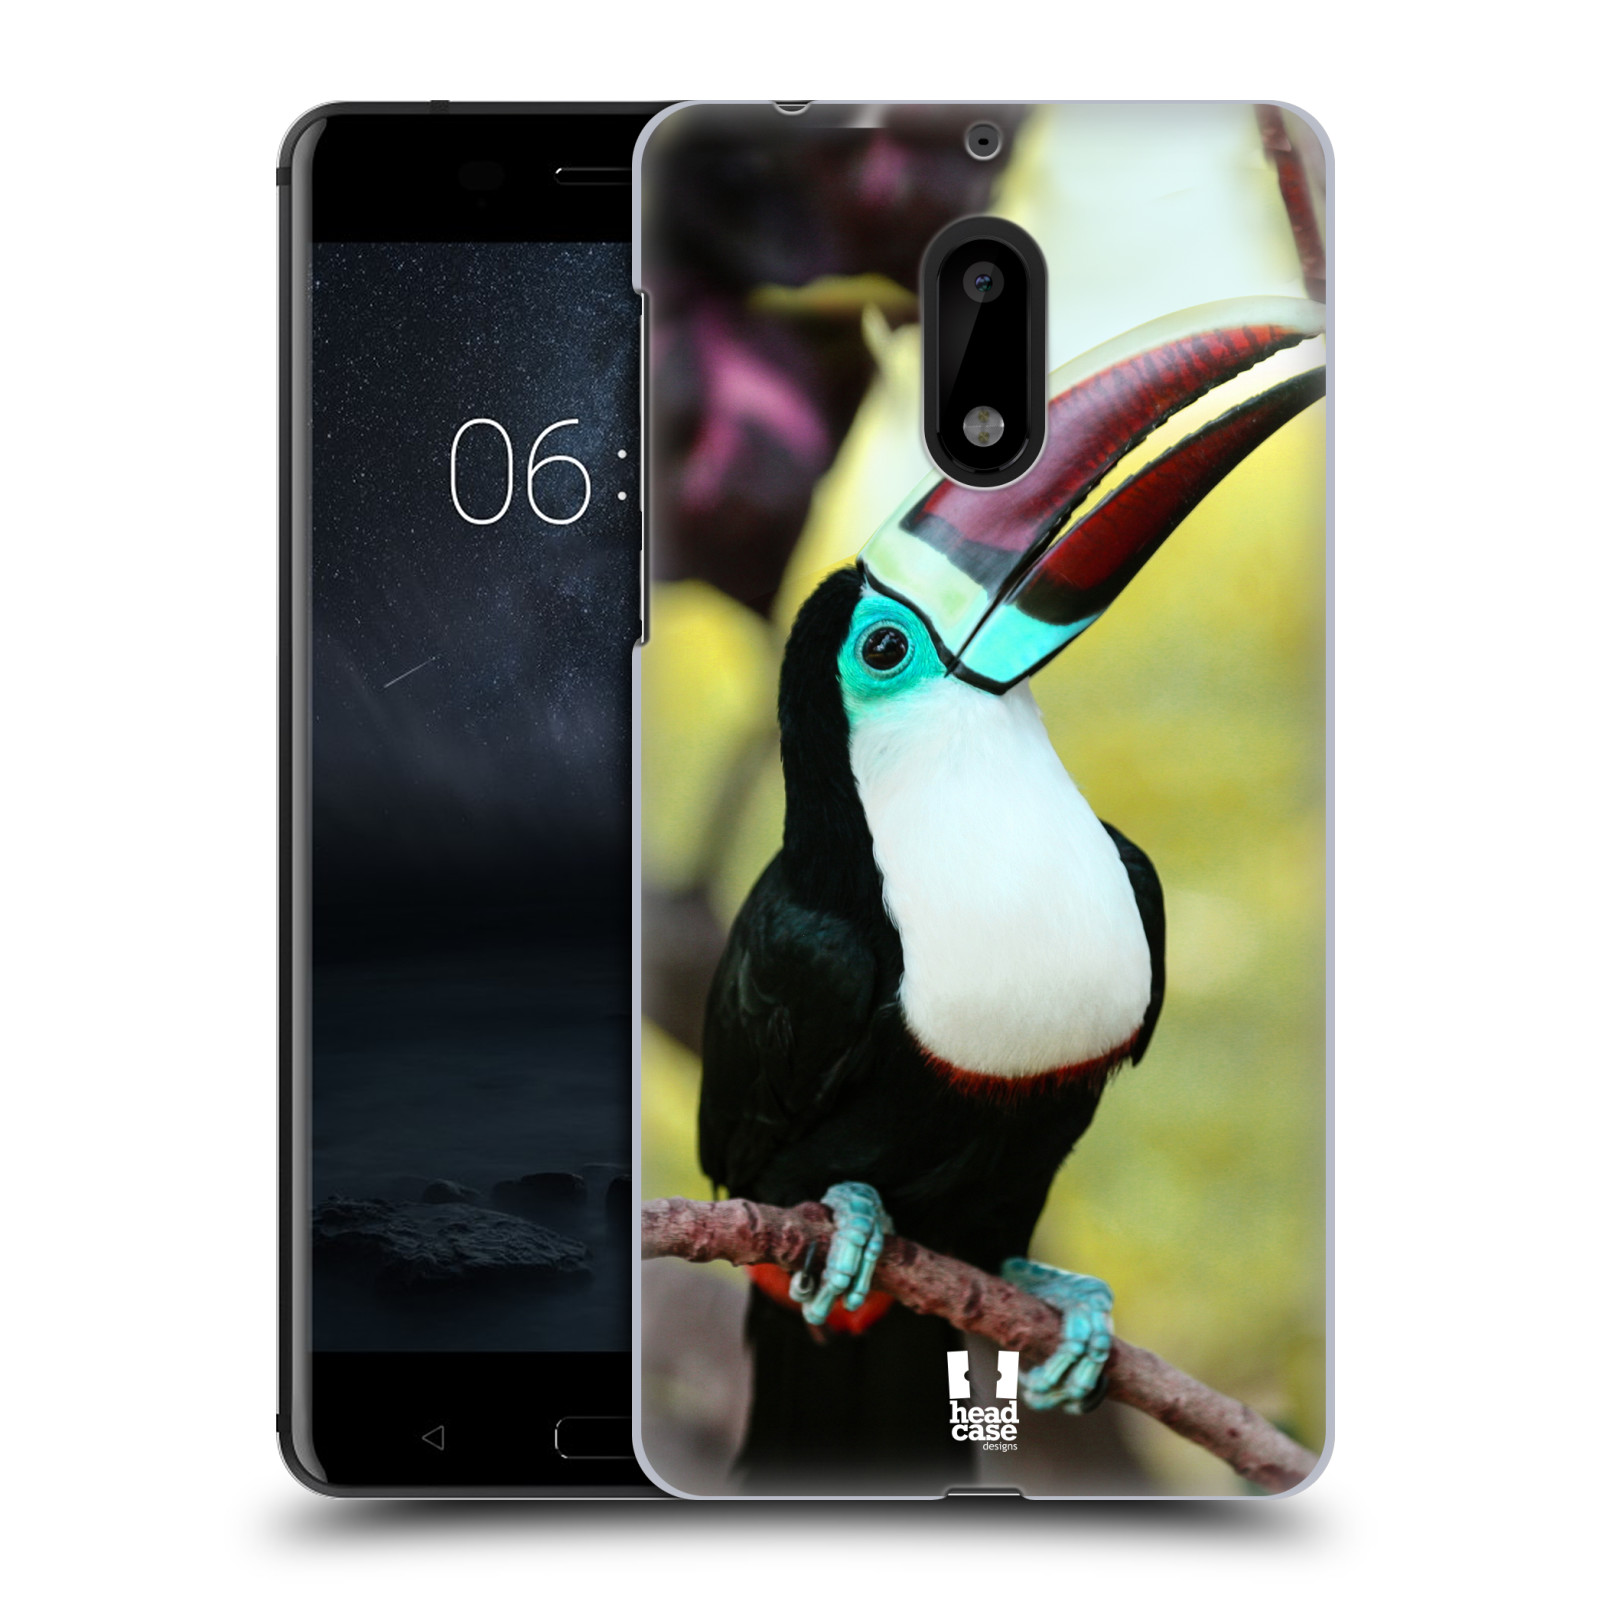 HEAD CASE plastový obal na mobil Nokia 6 vzor slavná zvířata foto tukan